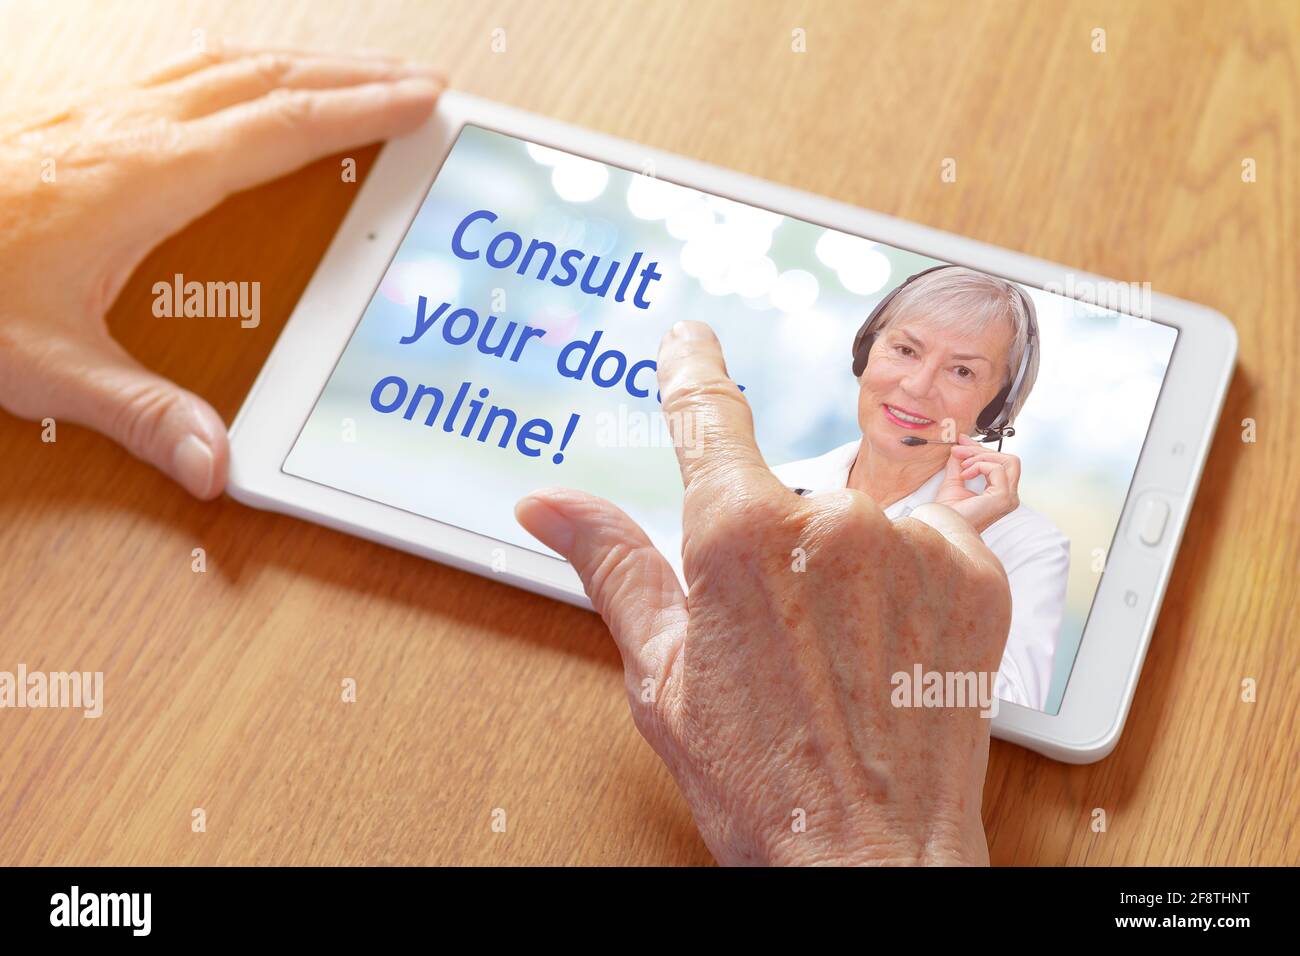 Mani che toccano un tablet pc con un'app di tele consulenze, mostrando un medico senior con l'auricolare e il testo: Consultare il medico online. Foto Stock